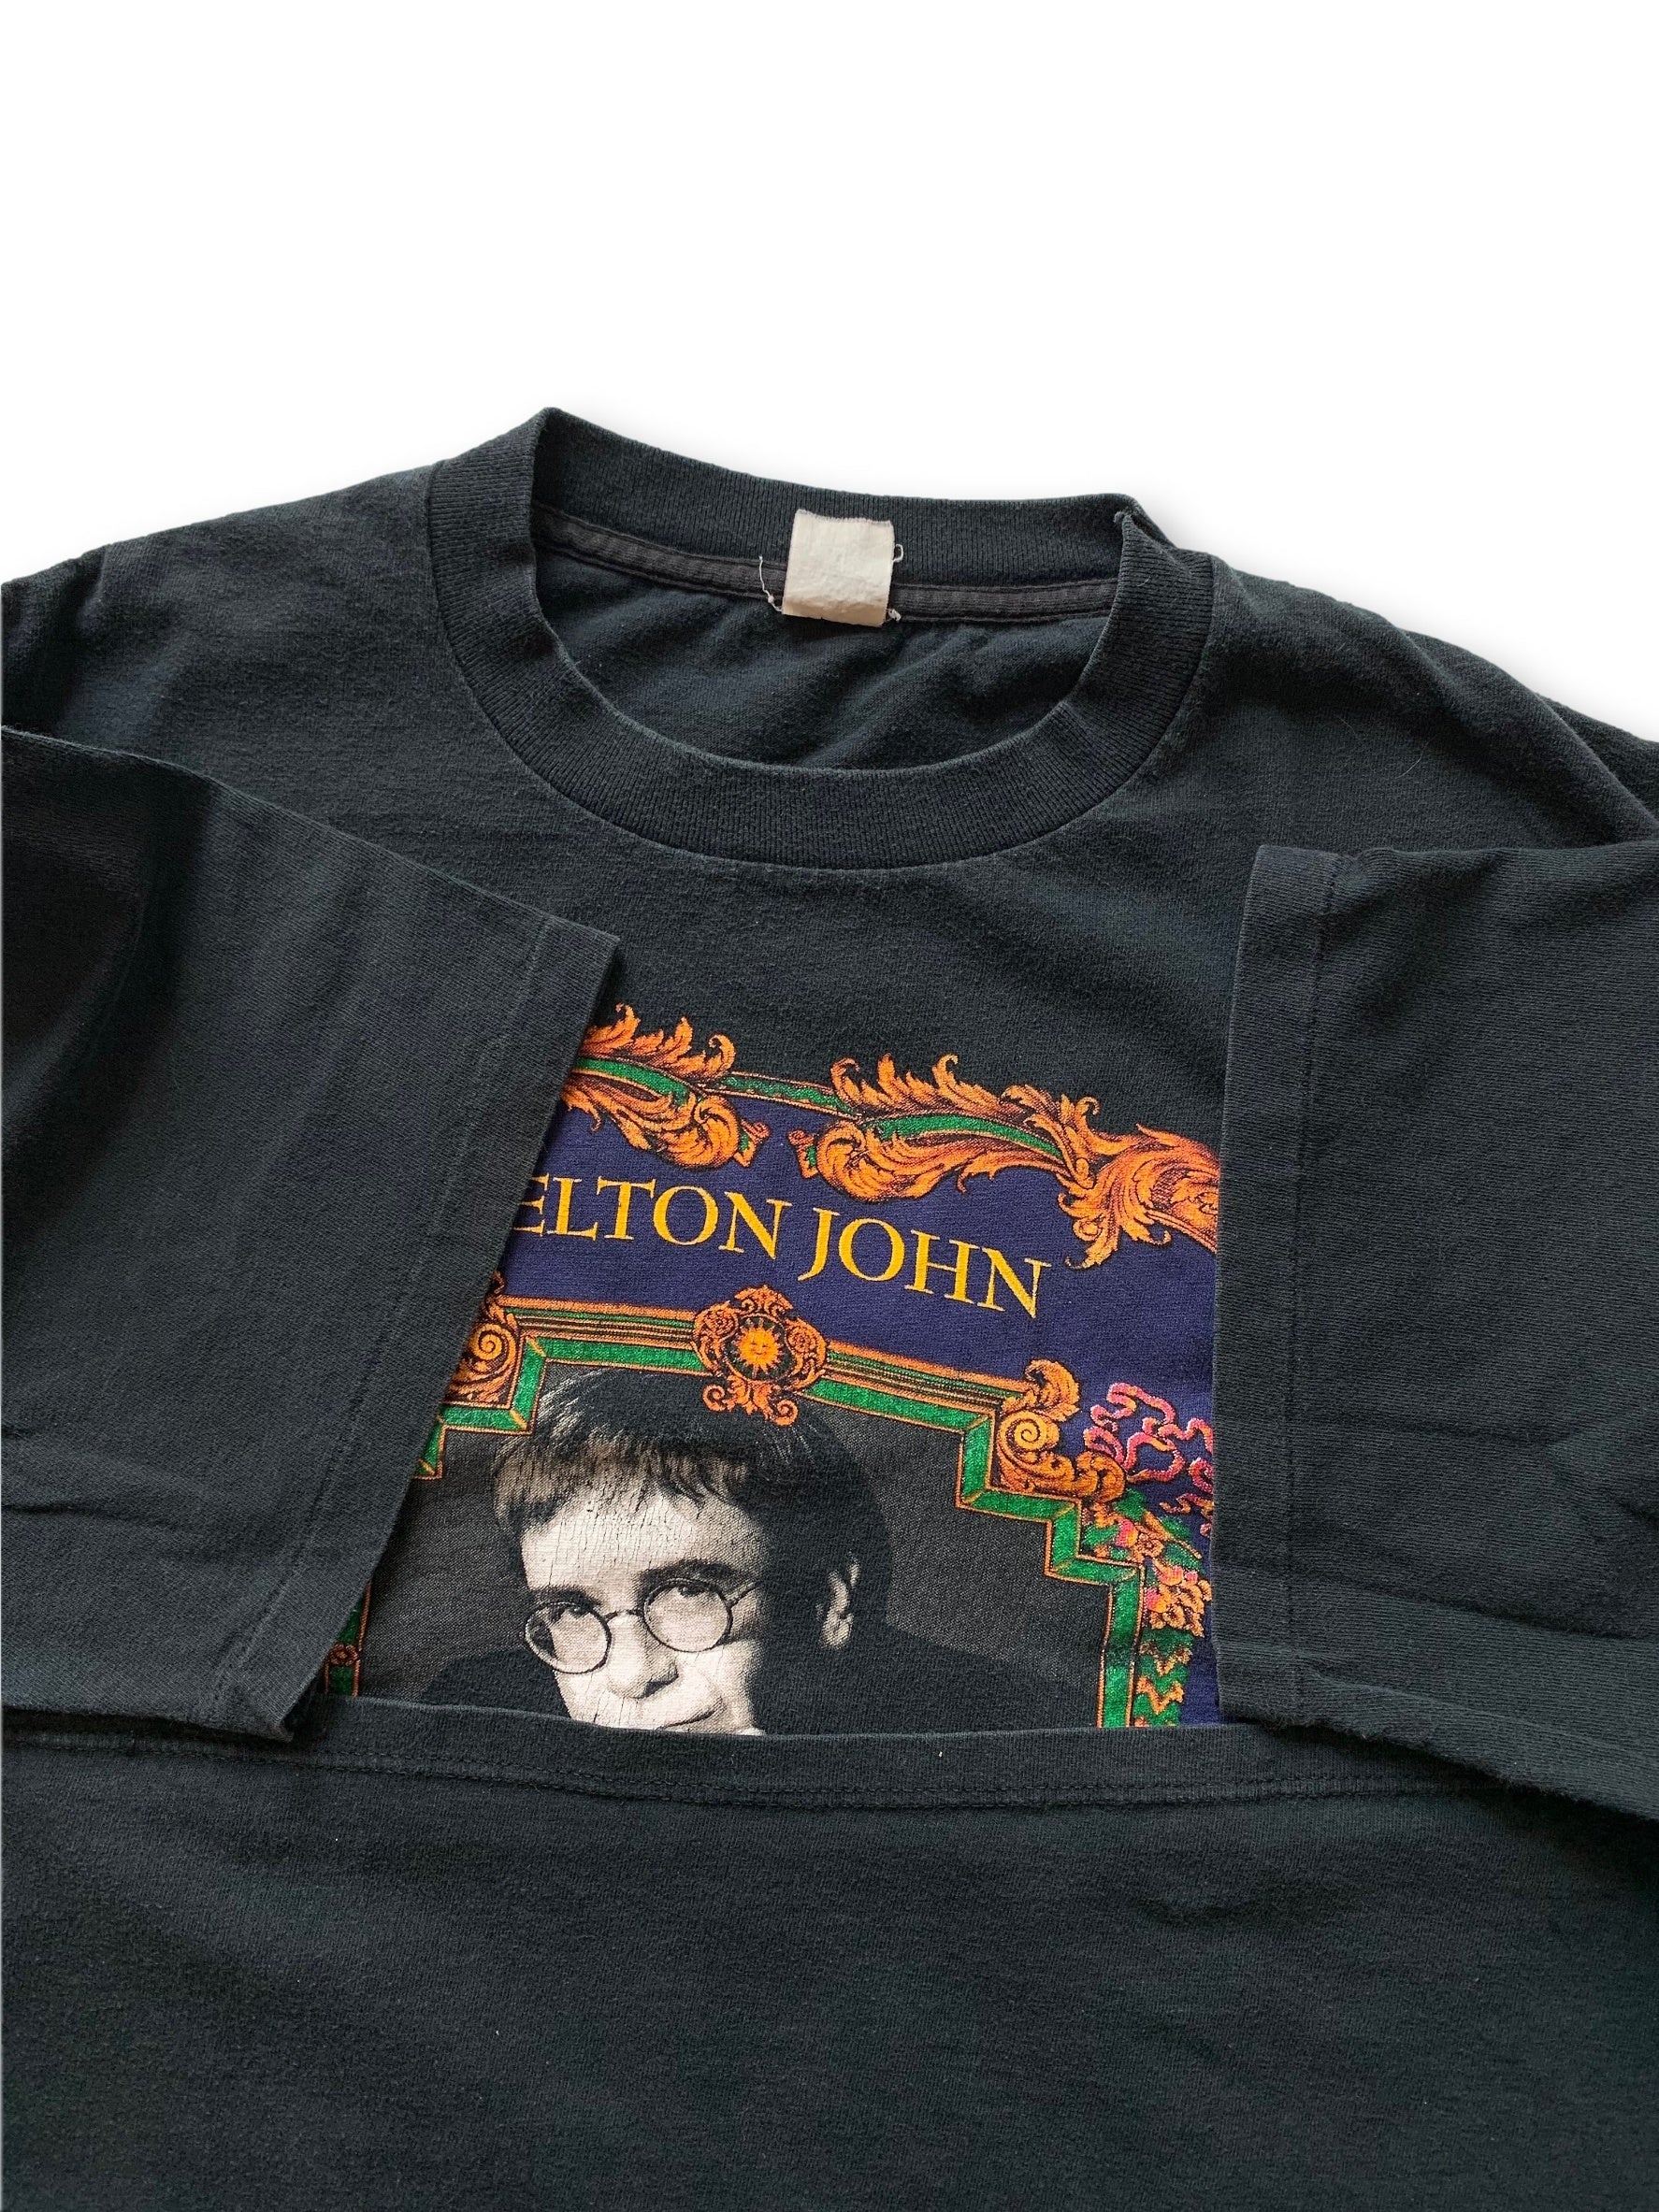 Tour John T-Shirt Elton